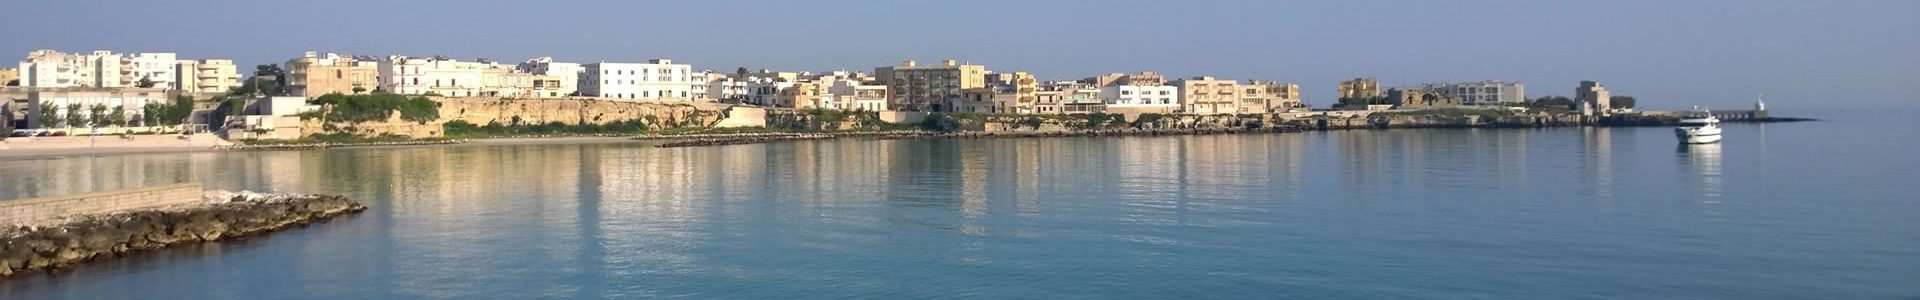 Appartamento 13 per vacanze ad Otranto